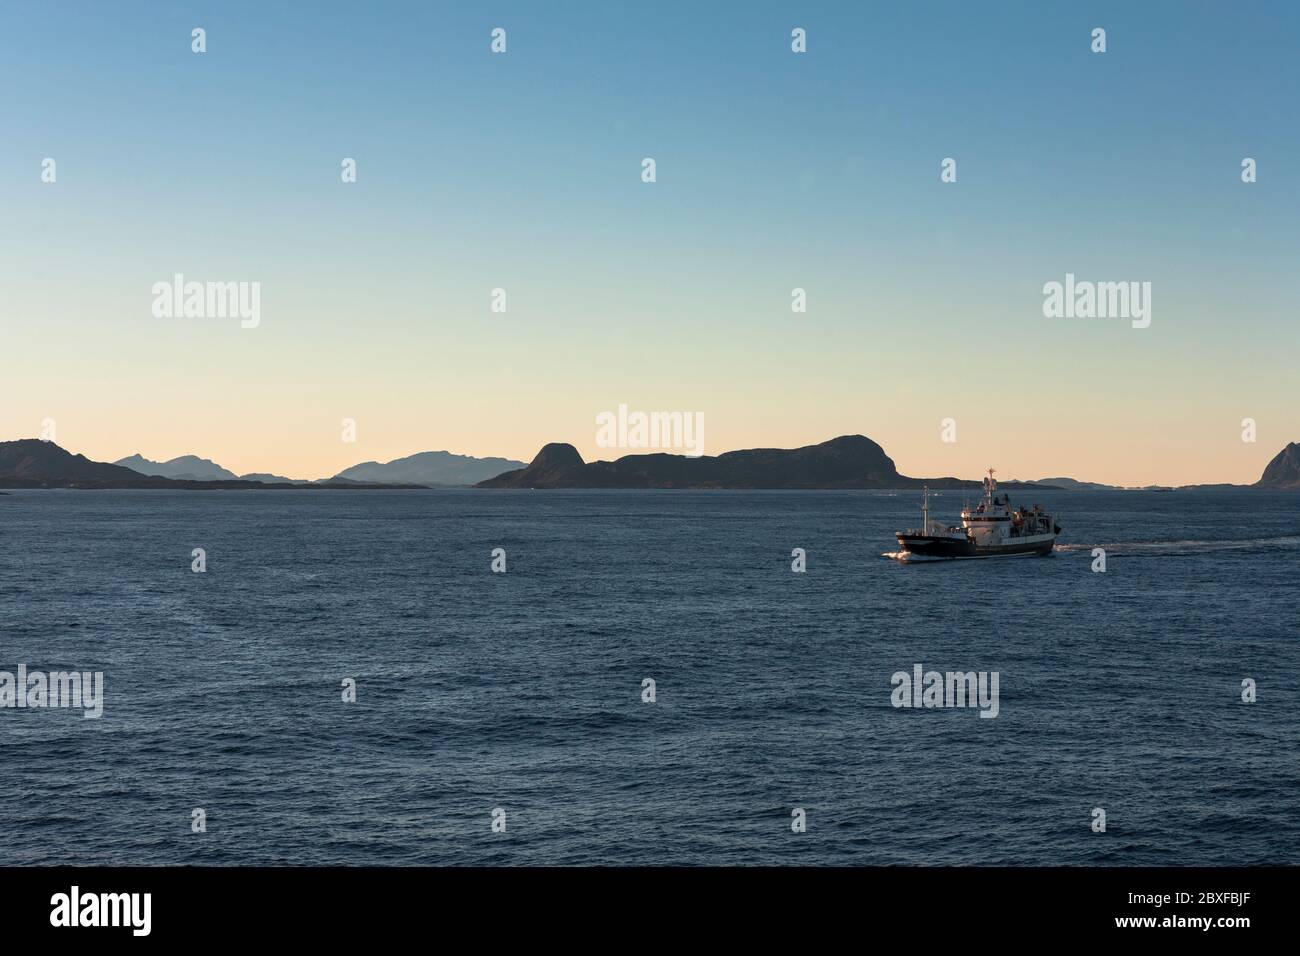 A fishing vessel crosses Smelværosen, Askvoll Municipality, Sogn og Fjordane, Norway Stock Photo